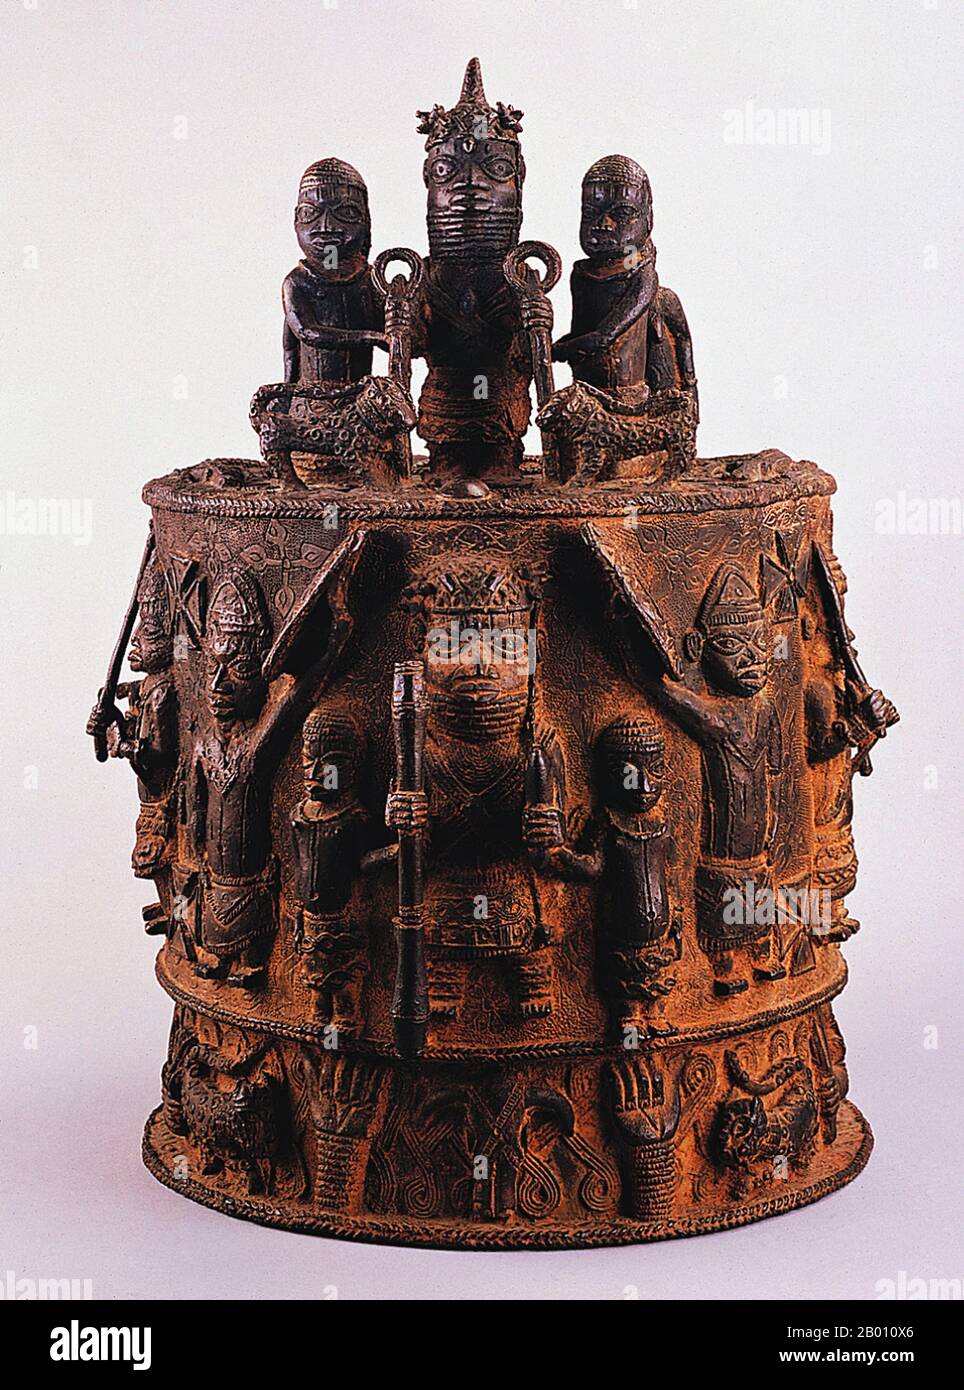 Nigeria: Ein Edo-Altar aus Bronze aus dem Königreich Benin, 17th. Bis 18th. Jahrhundert. Das Benin-Reich (1440–1897) war ein vorkolonialer afrikanischer Staat im heutigen Nigeria. Es ist nicht zu verwechseln mit dem modernen Land Benin (und früher Dahomey genannt). Stockfoto